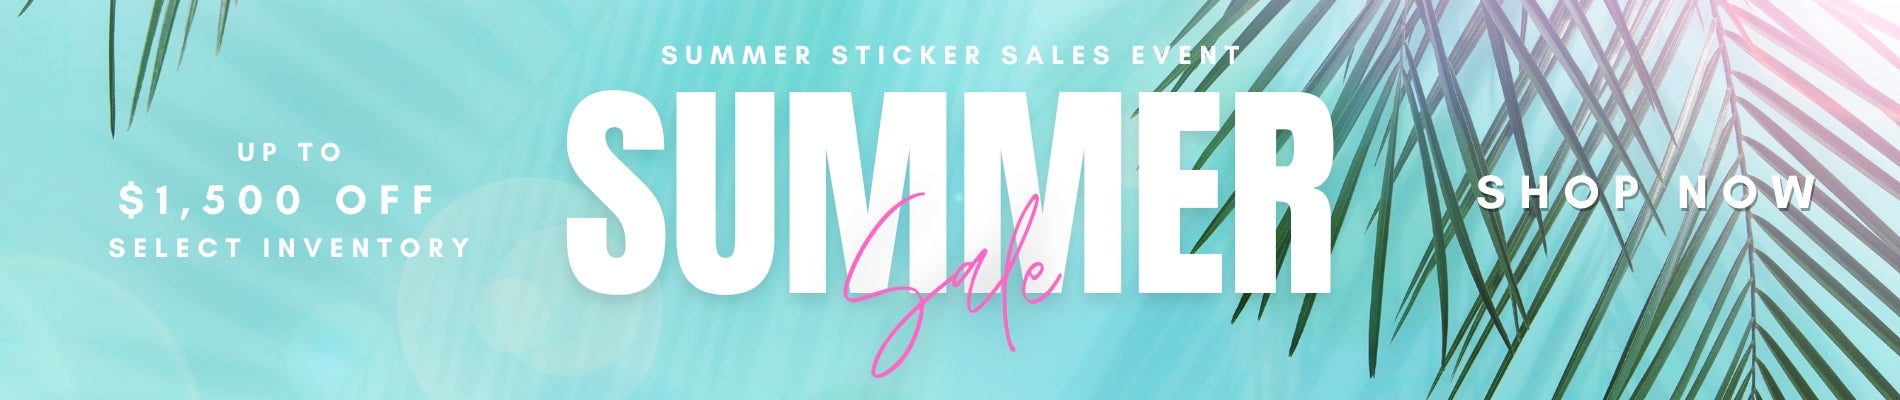 Summer Sticker Sales Event